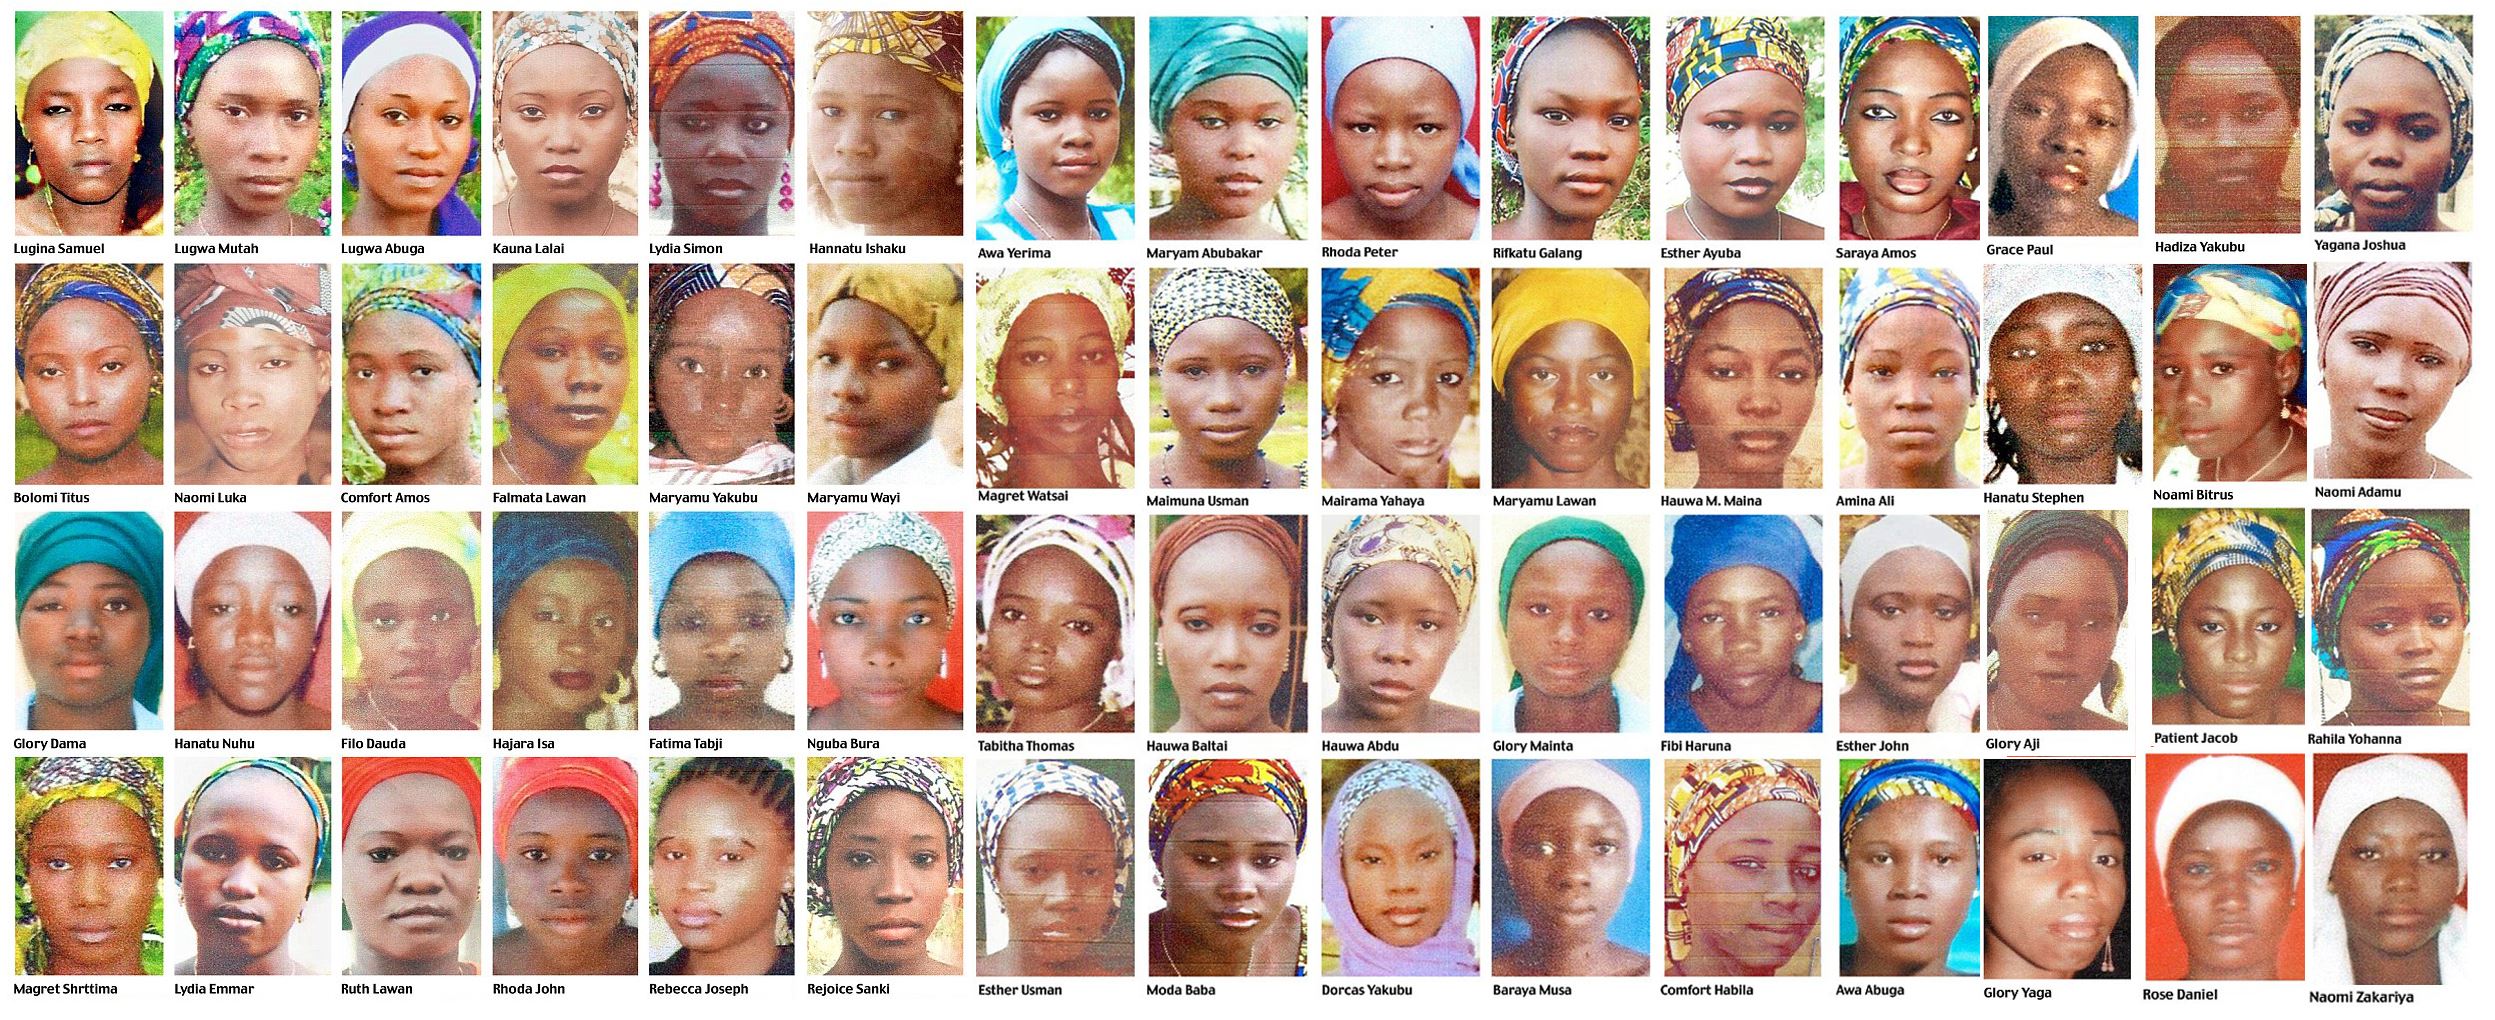 Colegialas nigerianas liberadas por Boko Haram